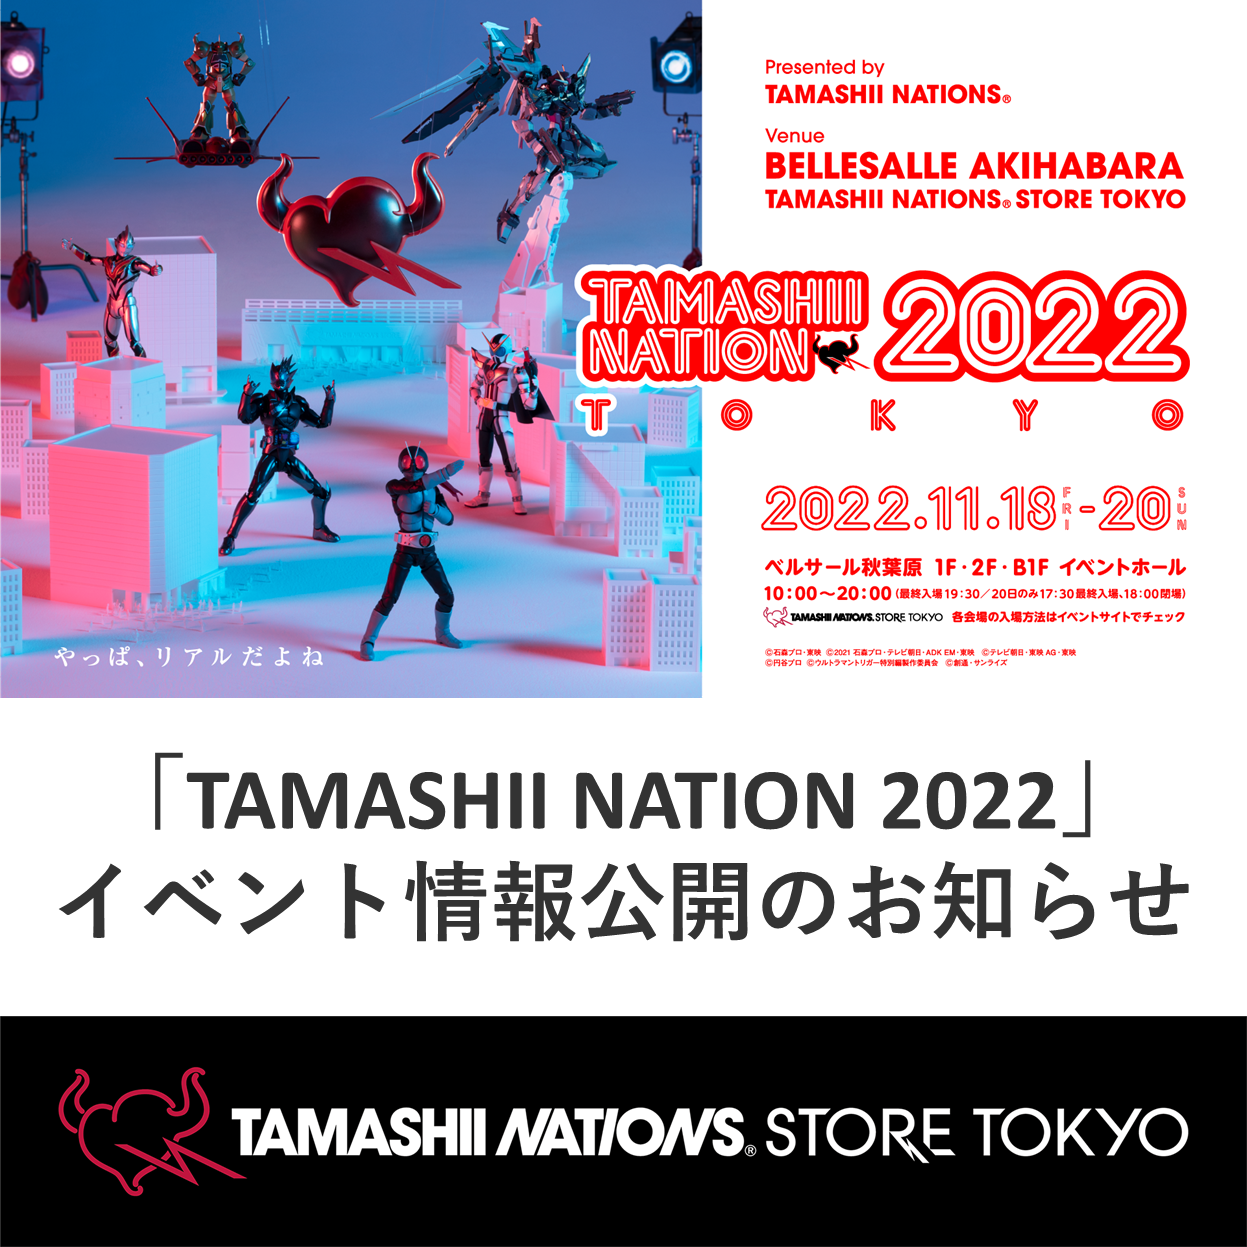 【魂ストア】「TAMASHII NATION 2022」イベント情報公開のお知らせ！